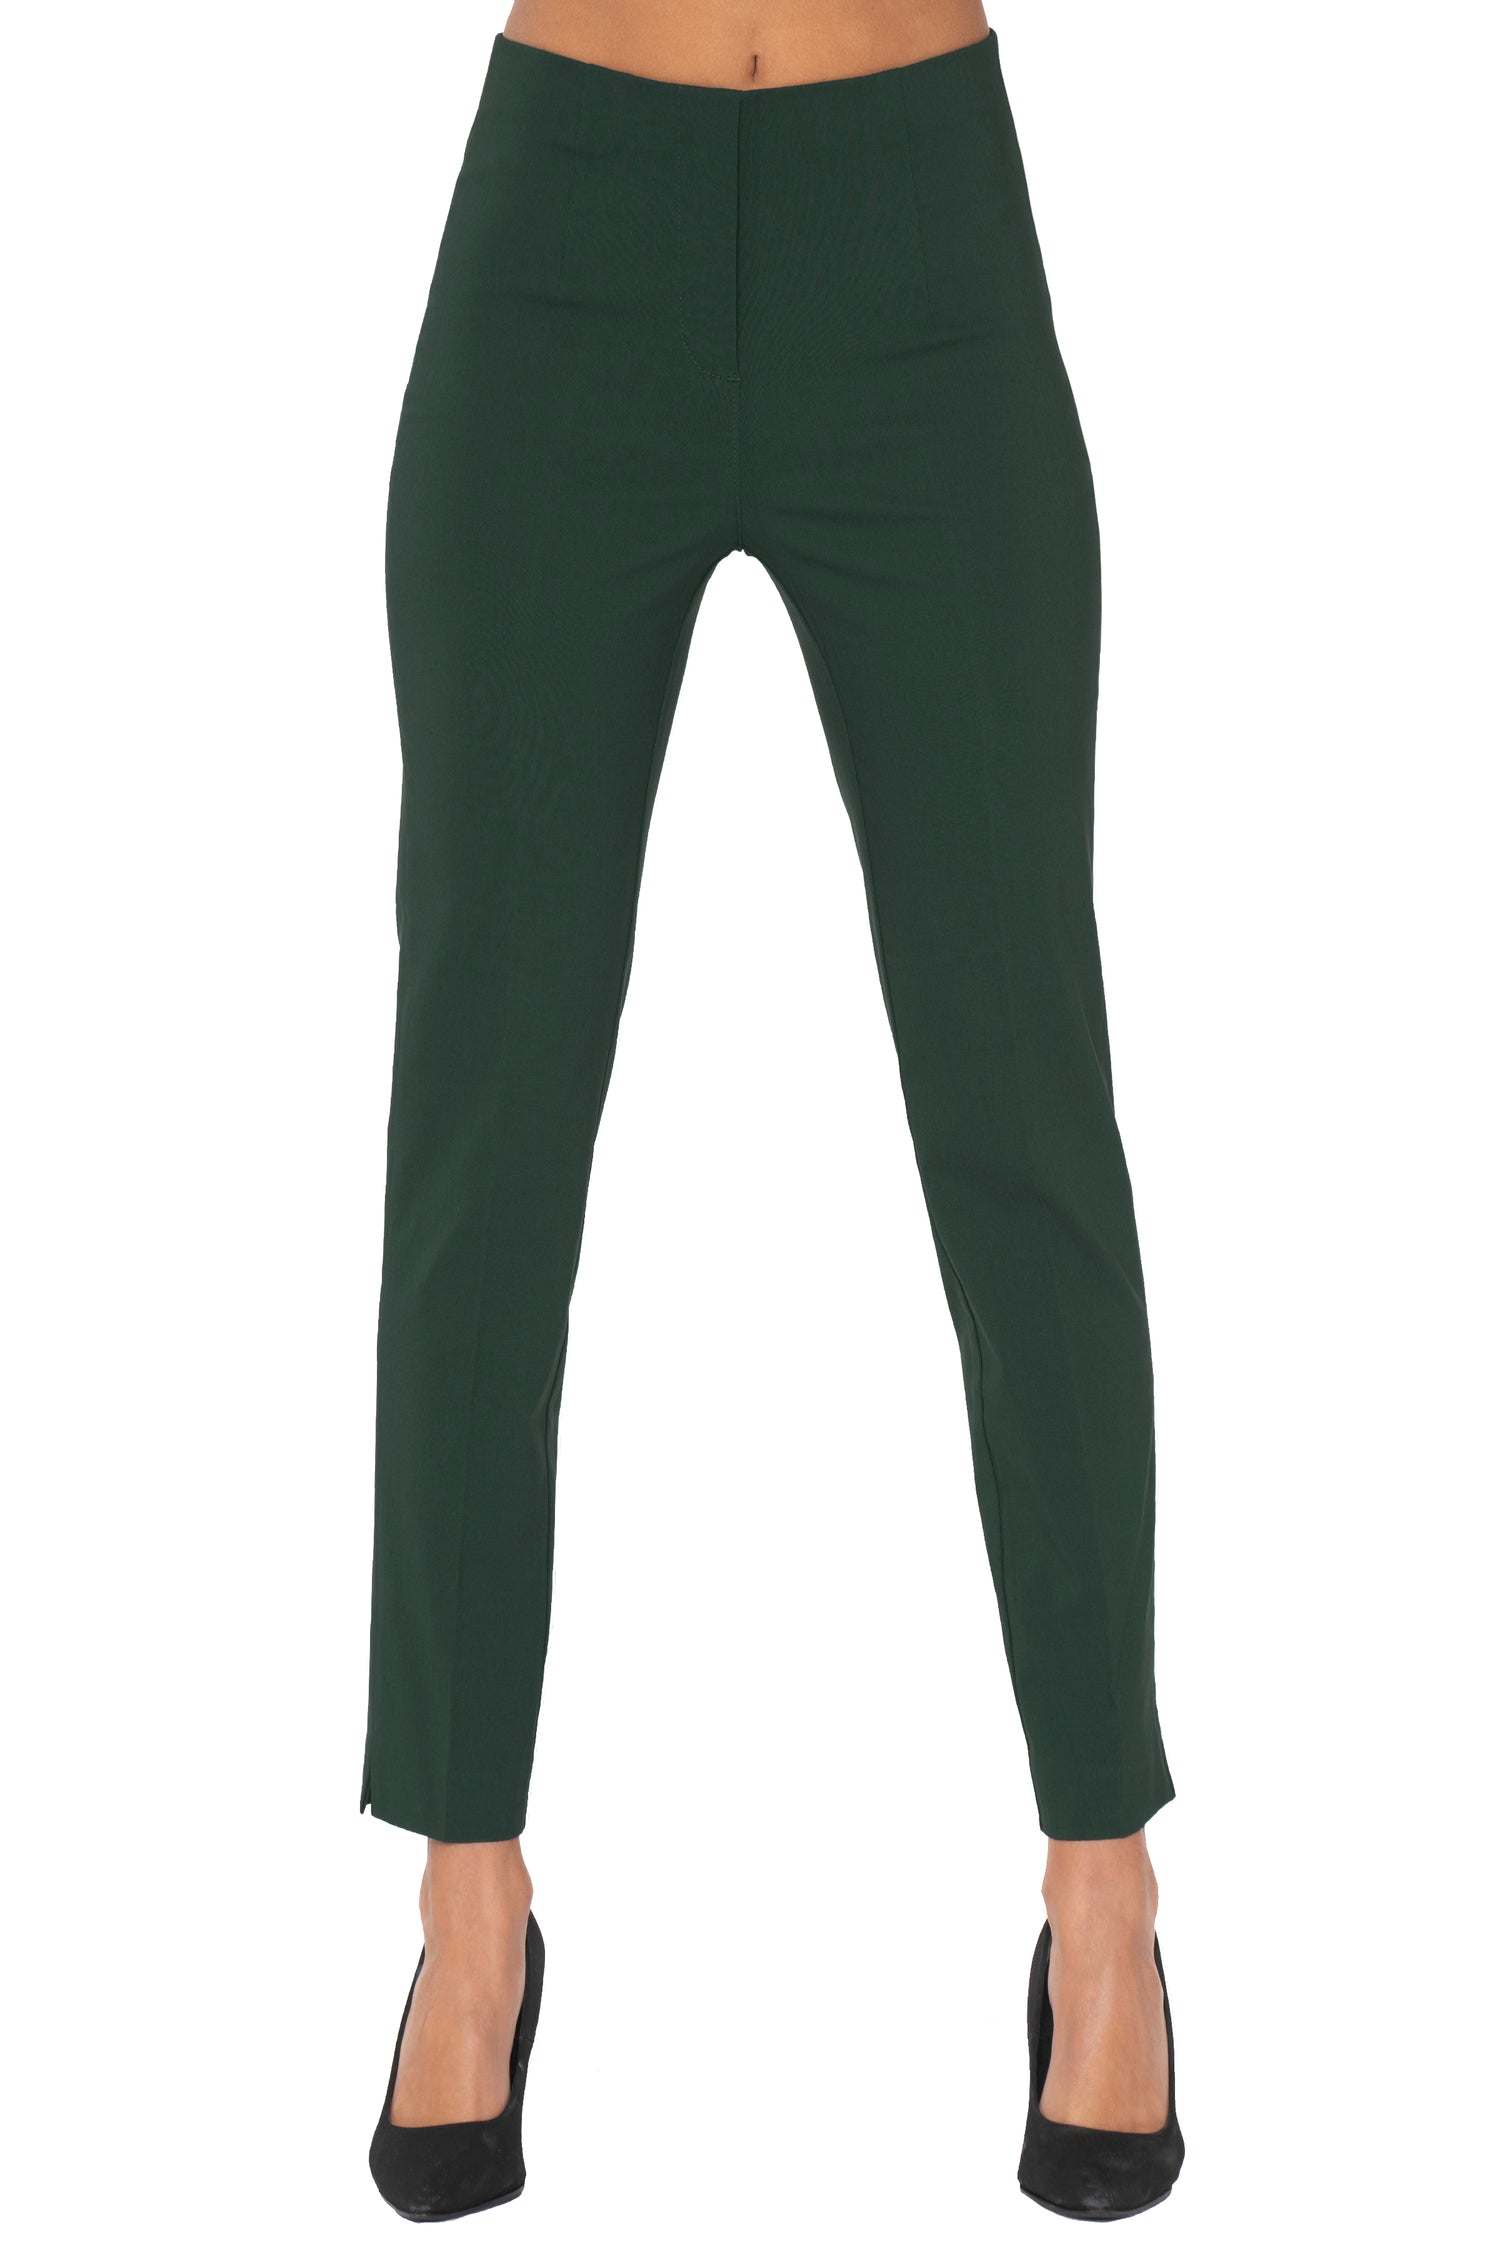 Buy Sea Green Trousers & Pants for Women by Silverfly Online | Ajio.com